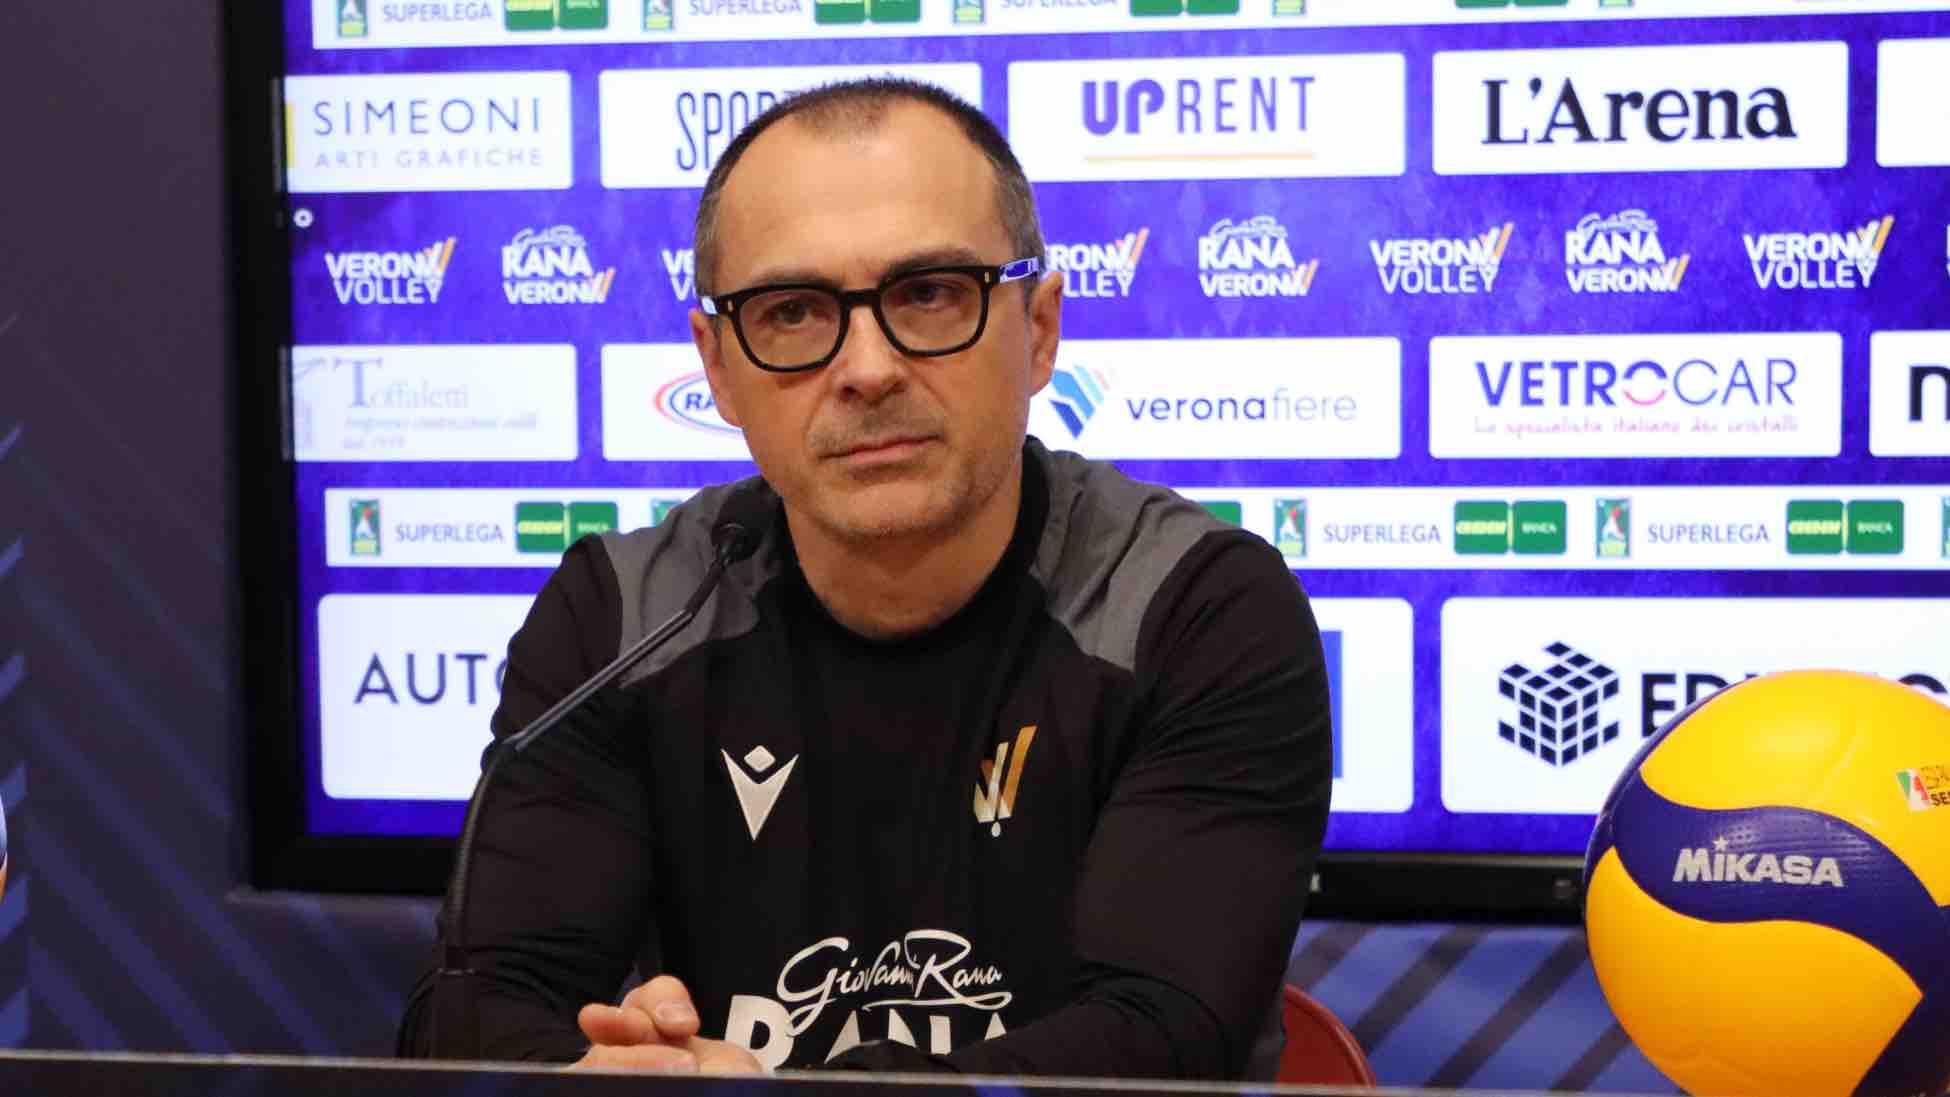 Rana Verona, coach Simoni: “A Trento non partiamo sconfitti. Saremo combattivi”